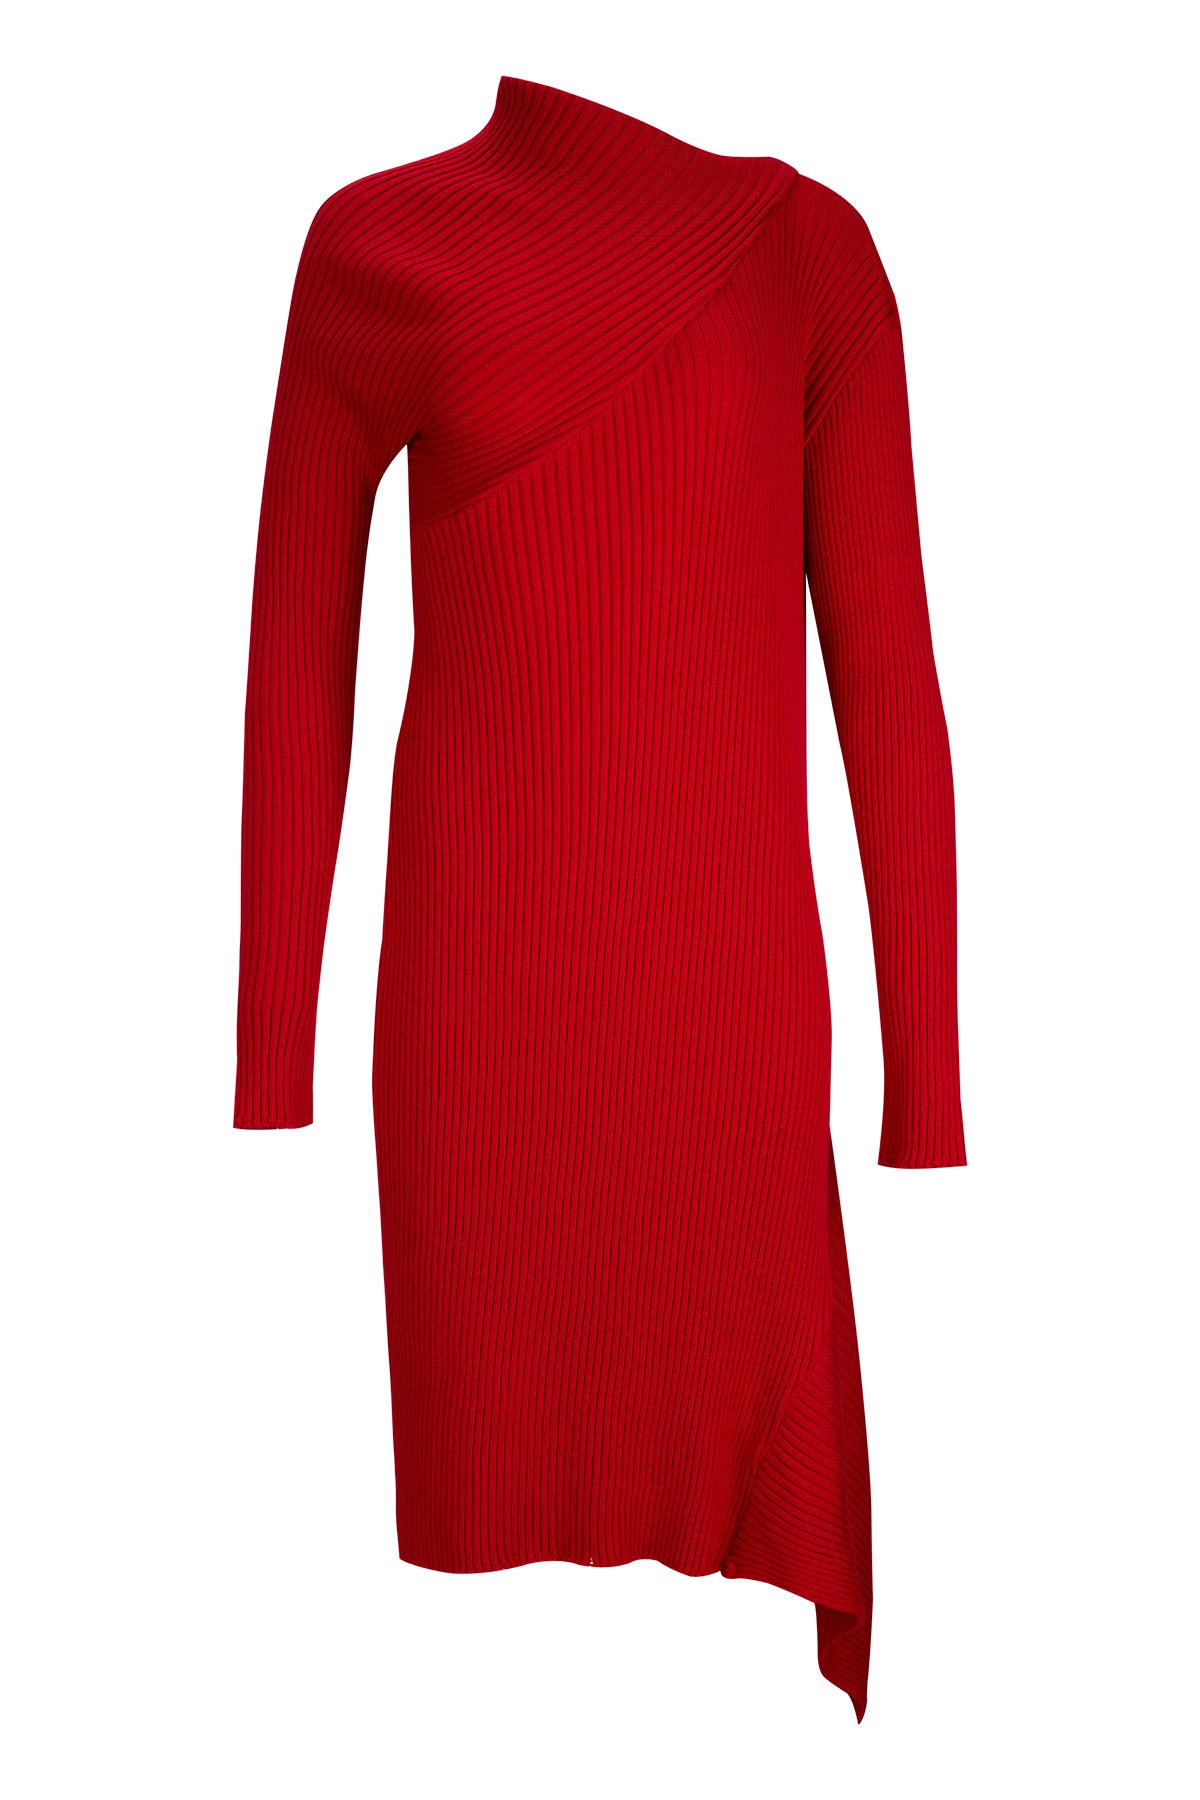 RED DRAPED NECK DRESS marques almeida